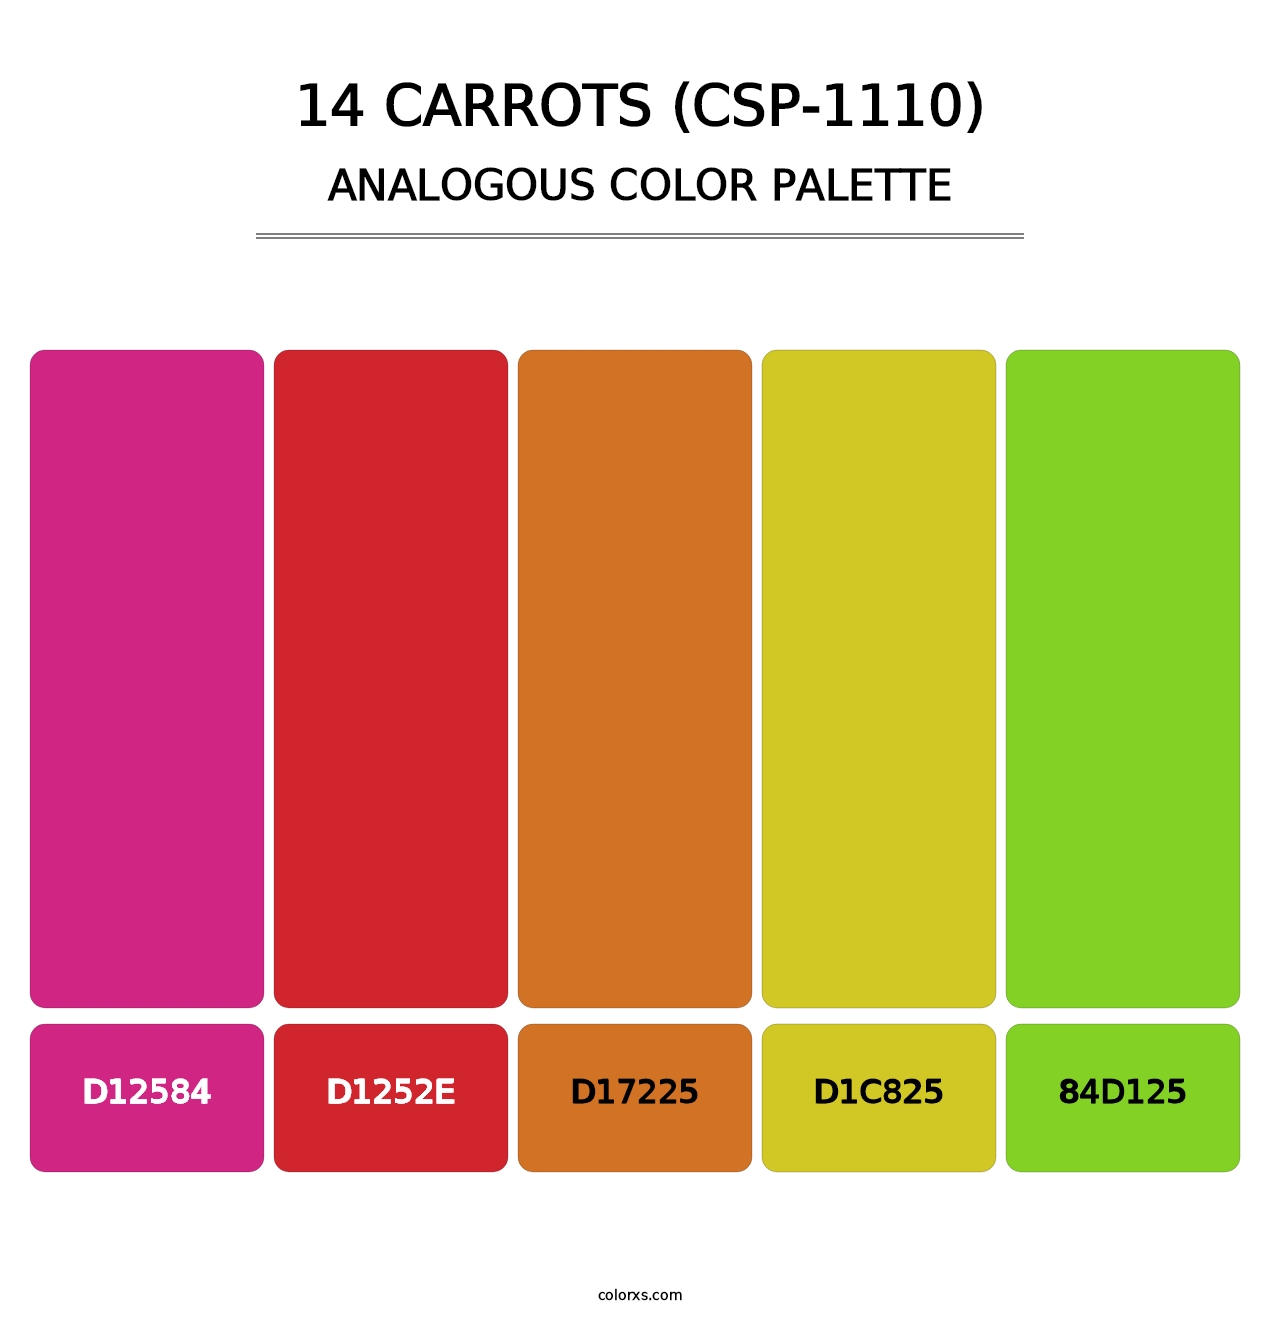 14 Carrots (CSP-1110) - Analogous Color Palette